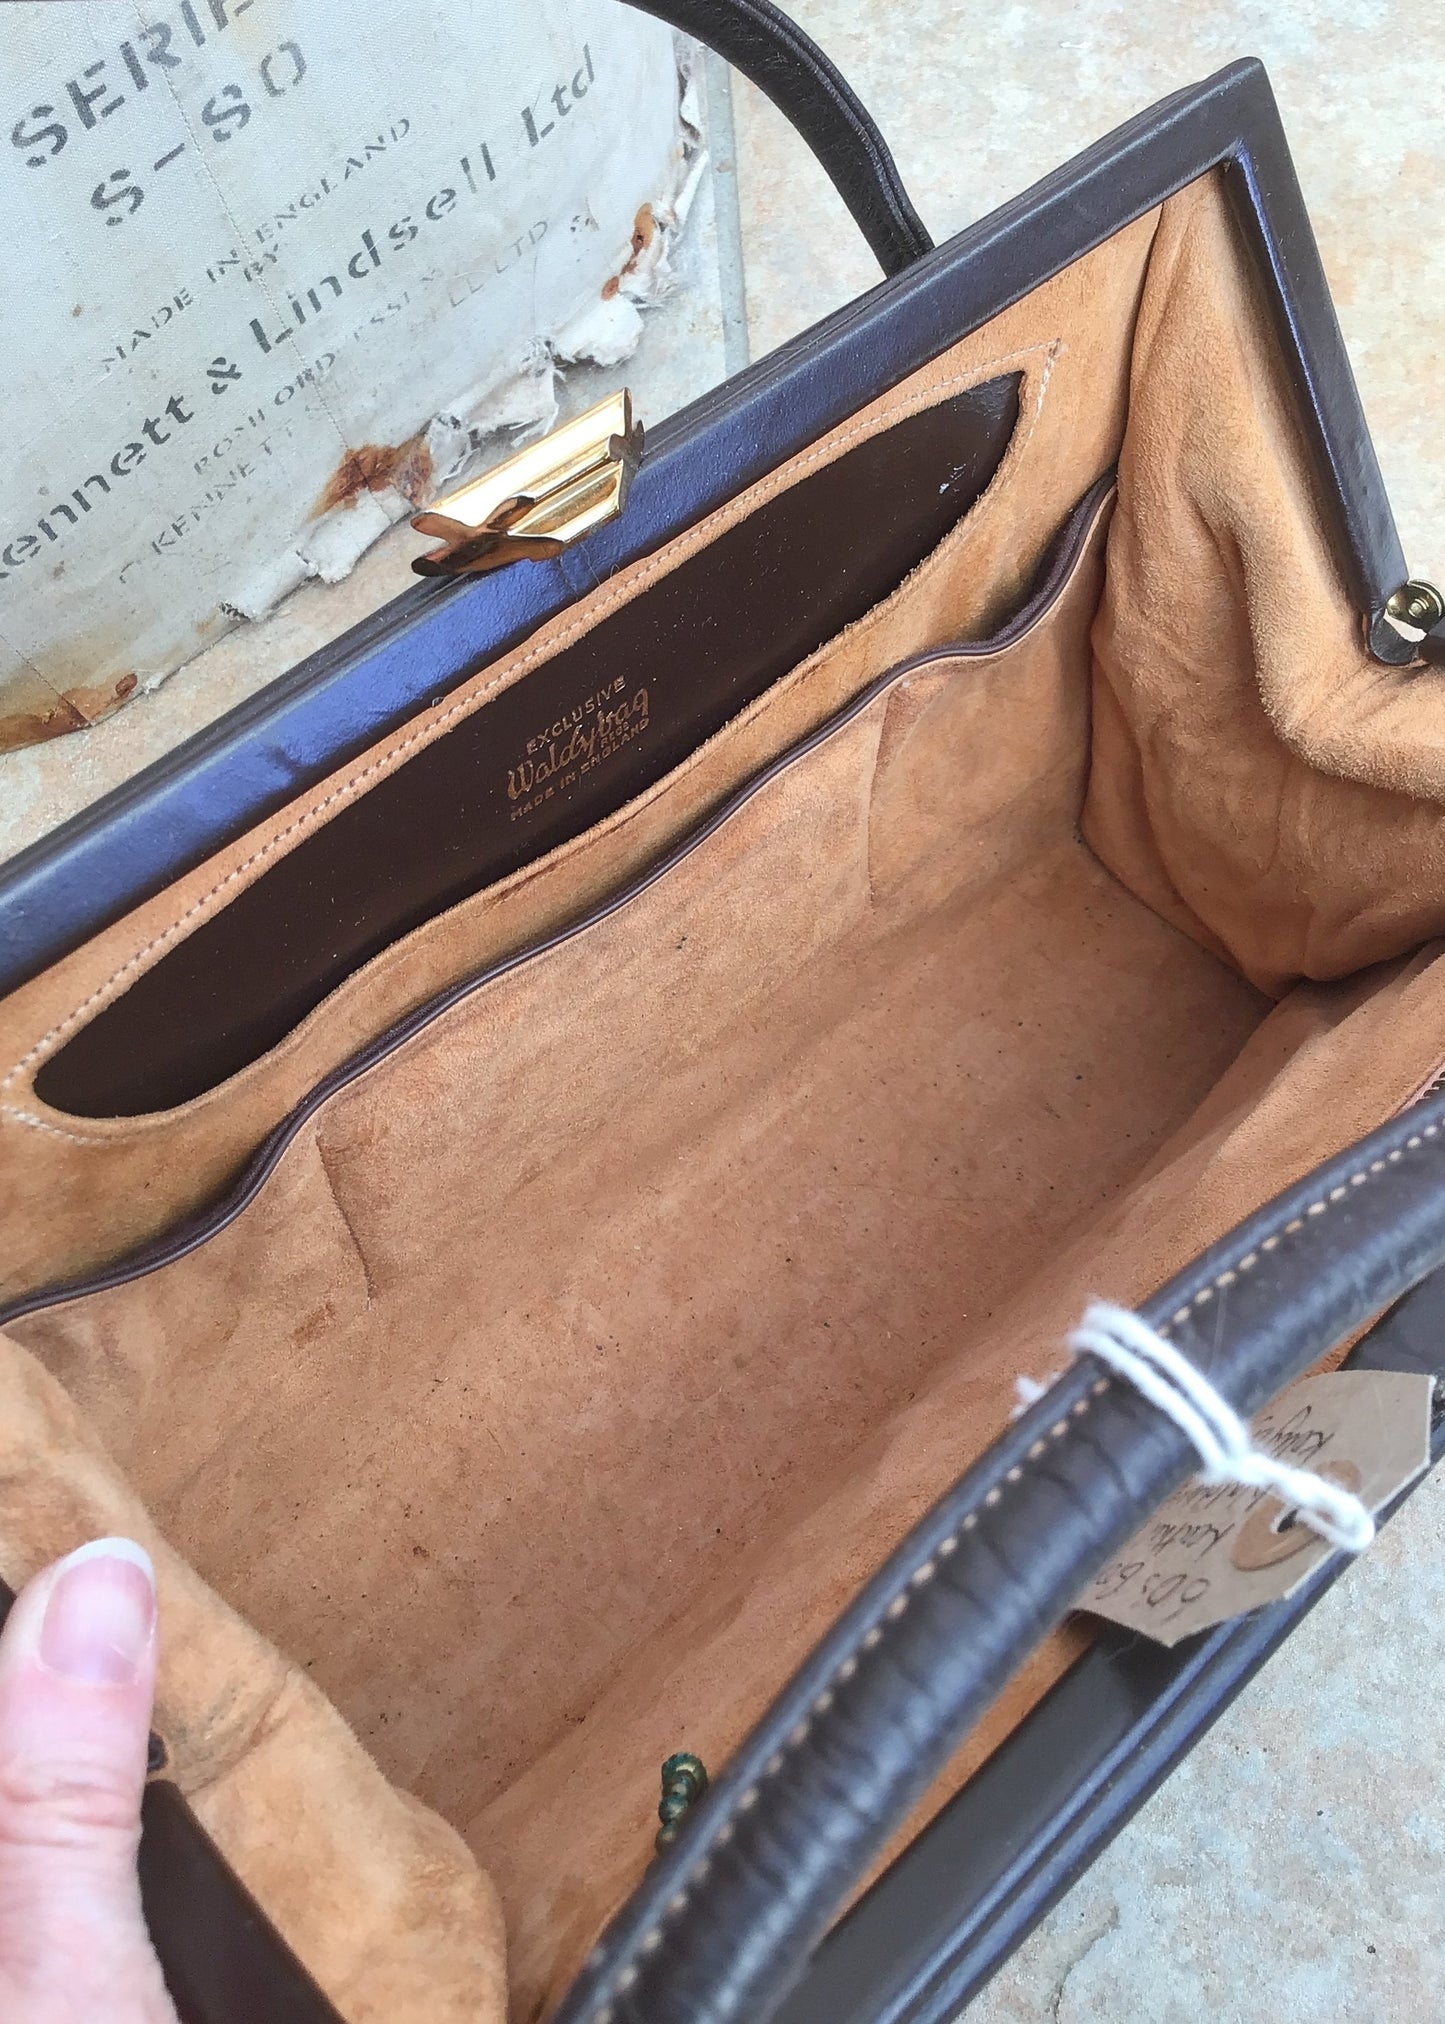 Vintage 1960s Brown Leather Waldybag Handbag • Top Handle Bag